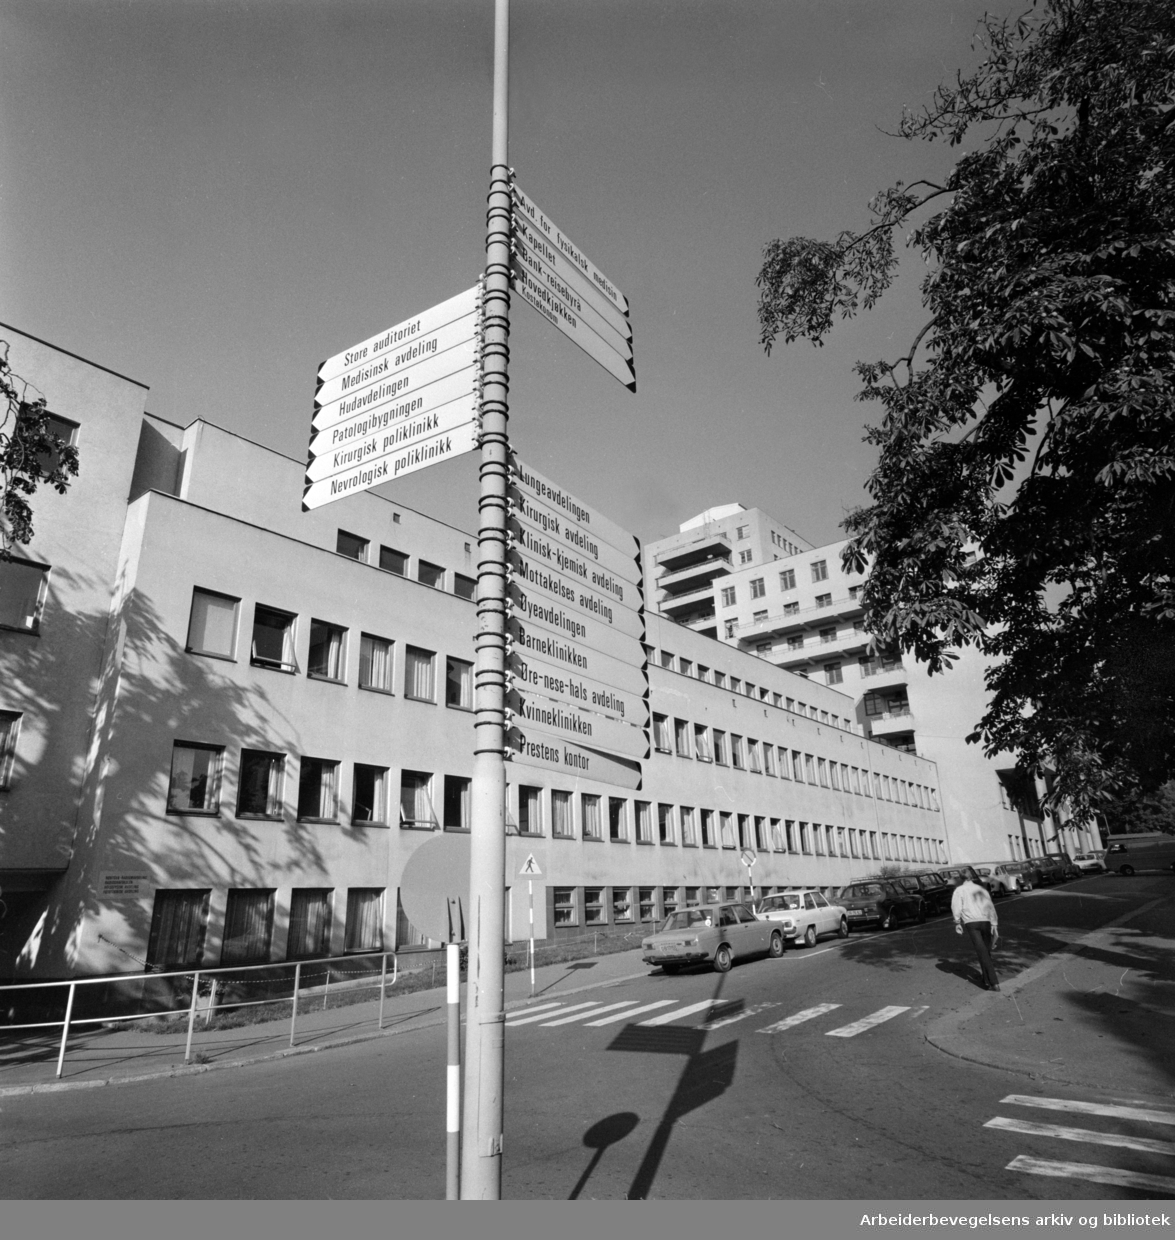 Rikshospitalet. September 1976